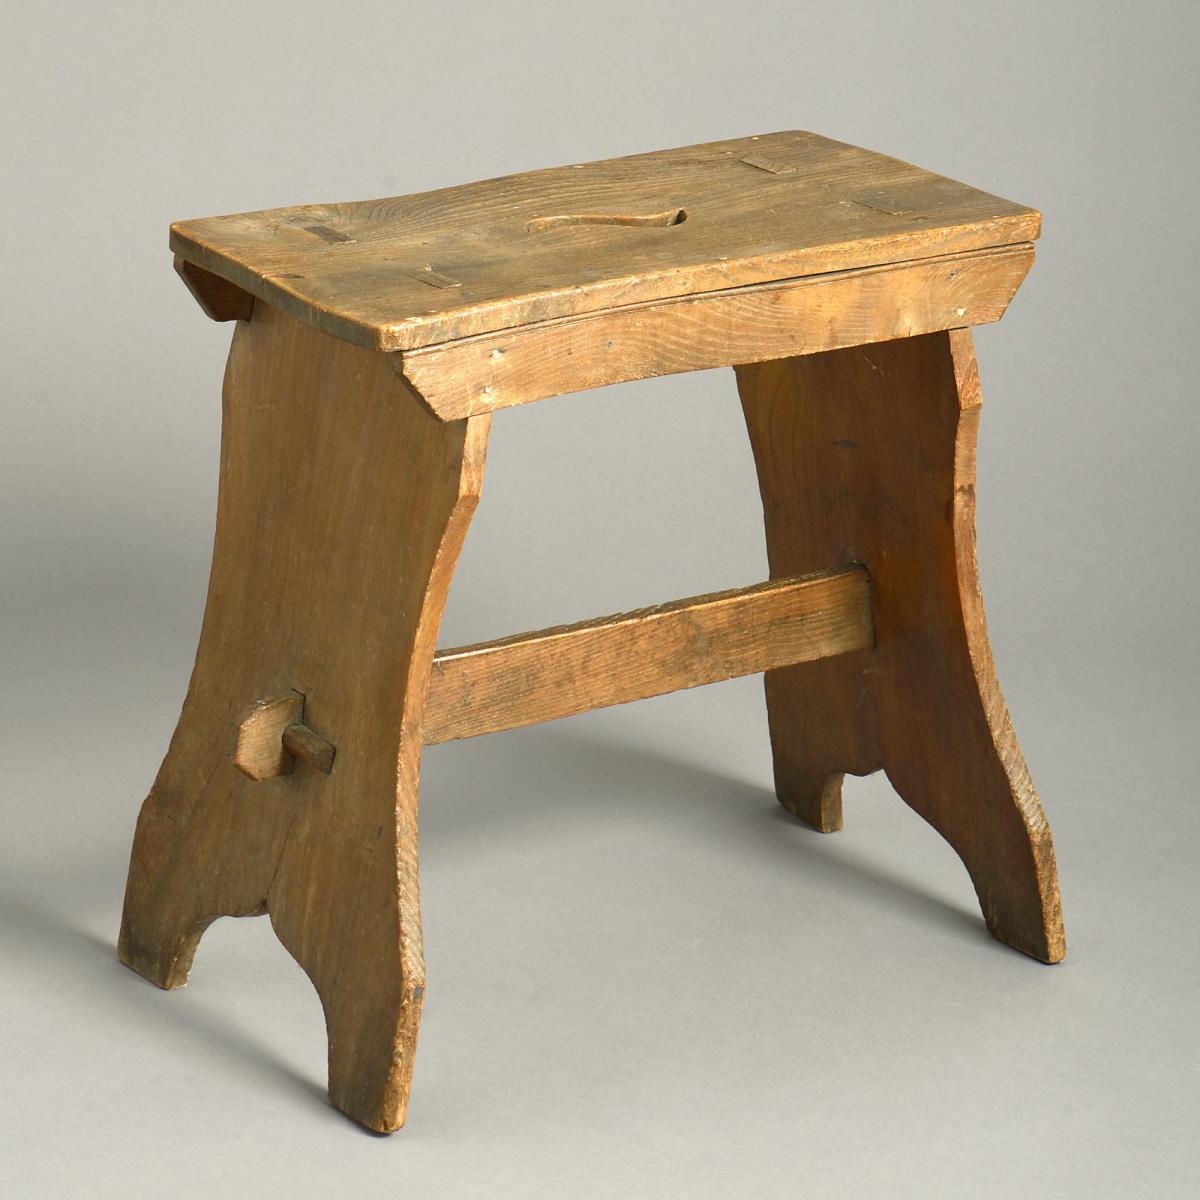 pair of vernacular chestnut stools